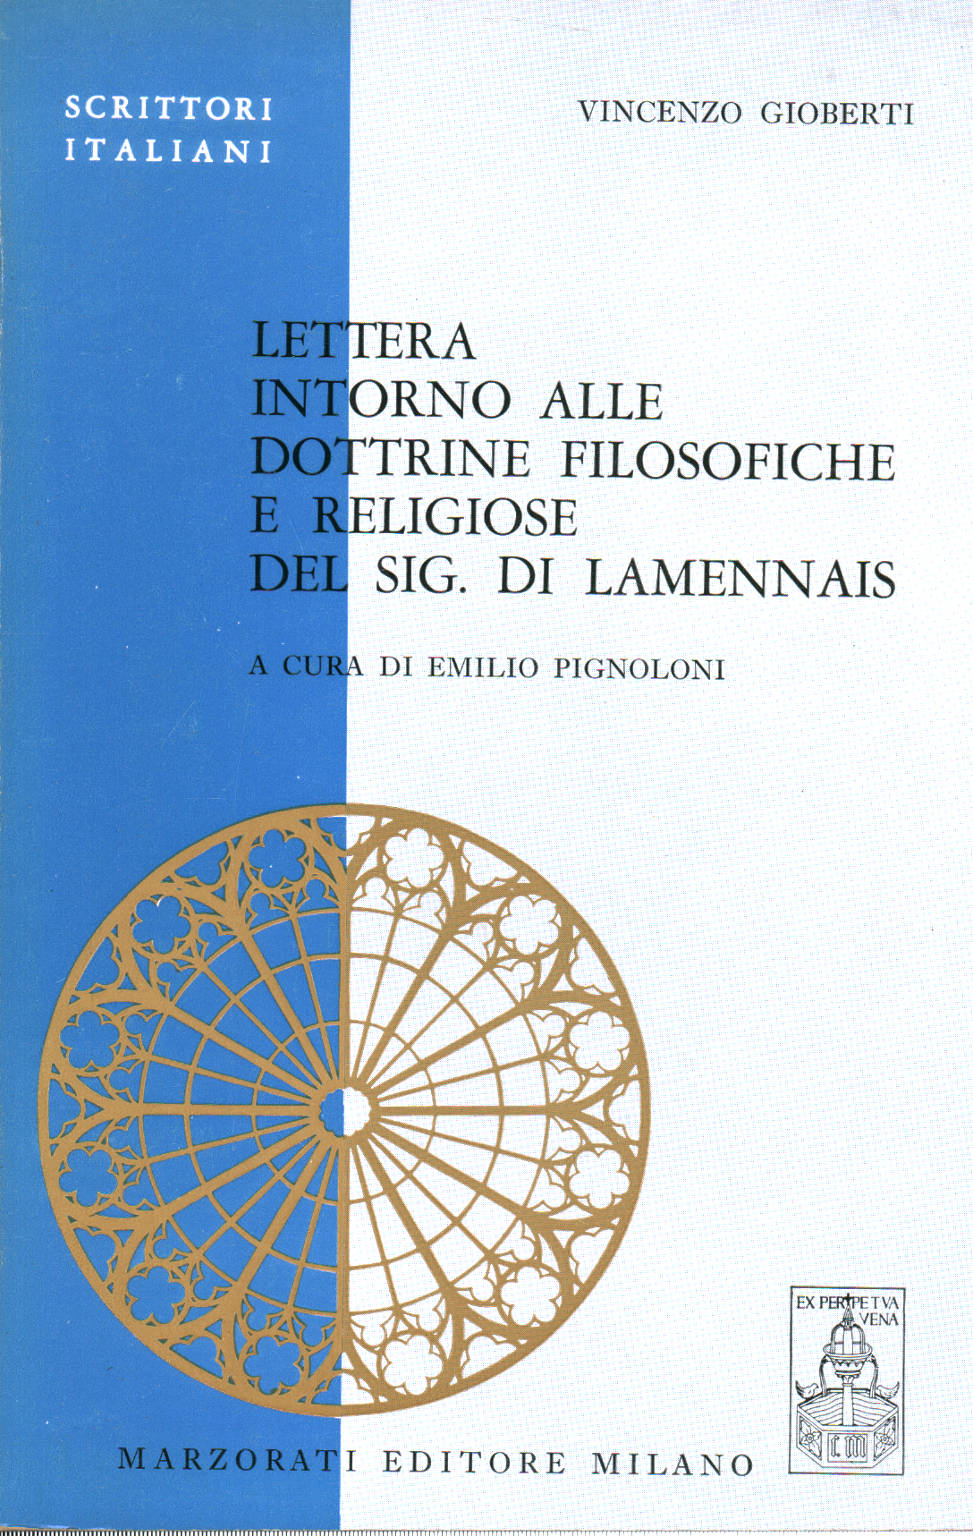 Lettera intorno alle dottrine filosofiche e religi, s.a.